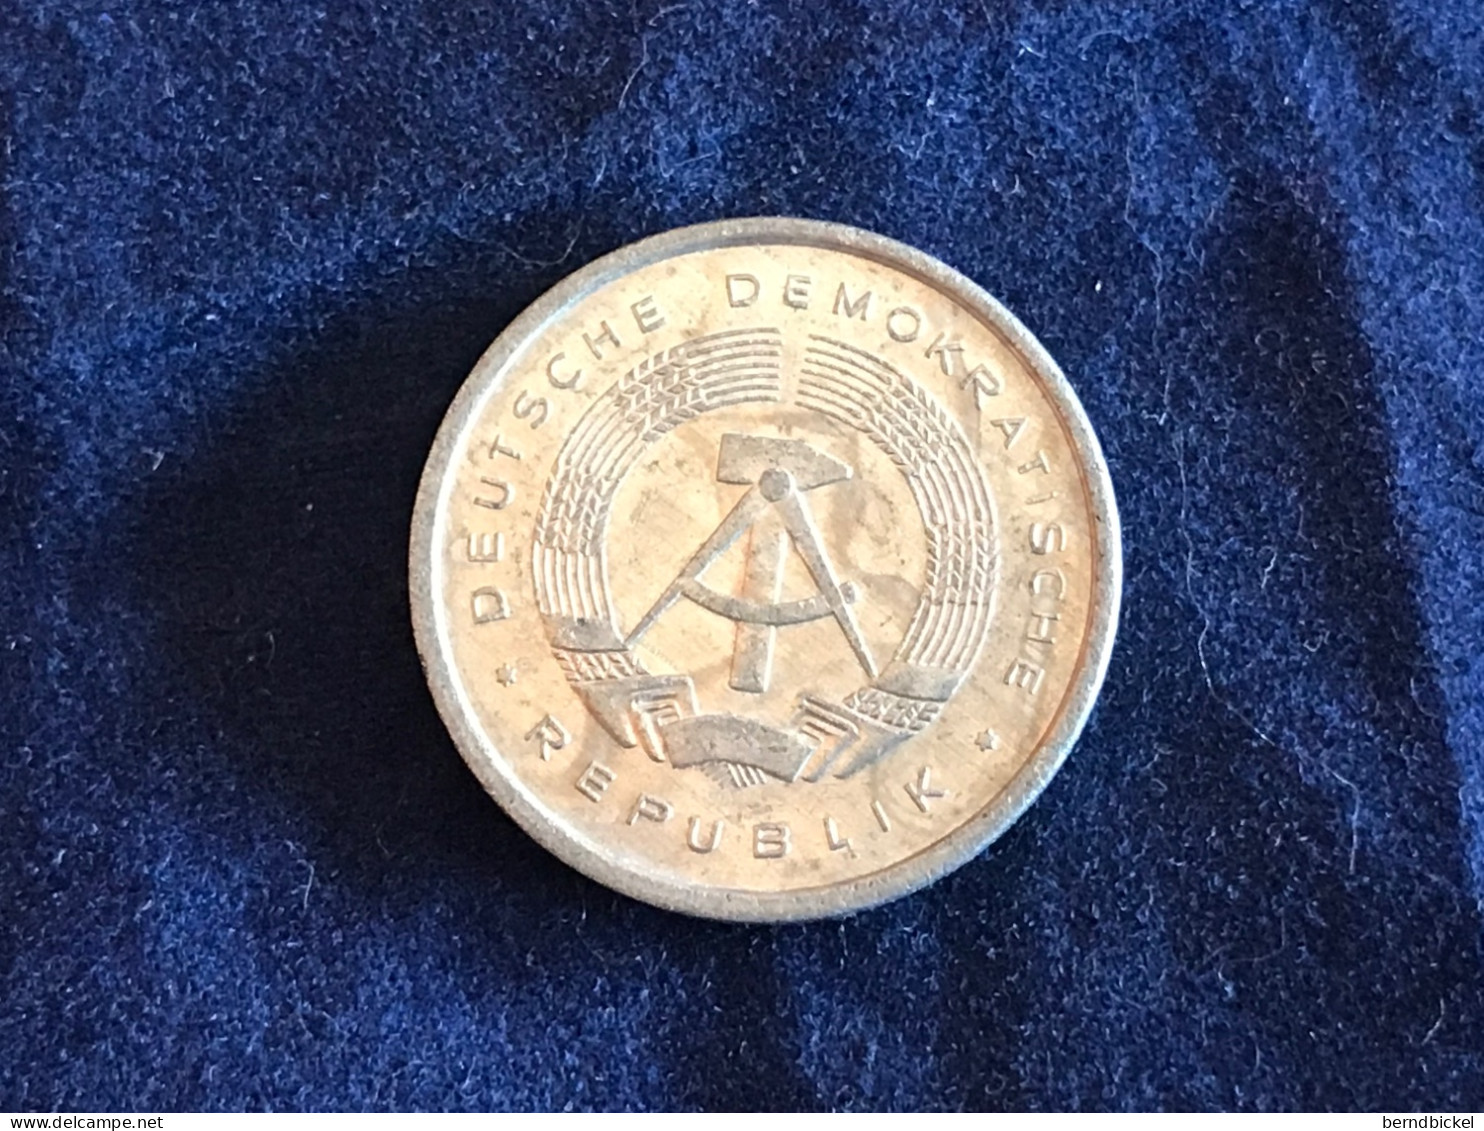 Münze Münzen Umlaufmünze Deutschland DDR 5 Pfennig 1980 - 5 Pfennig